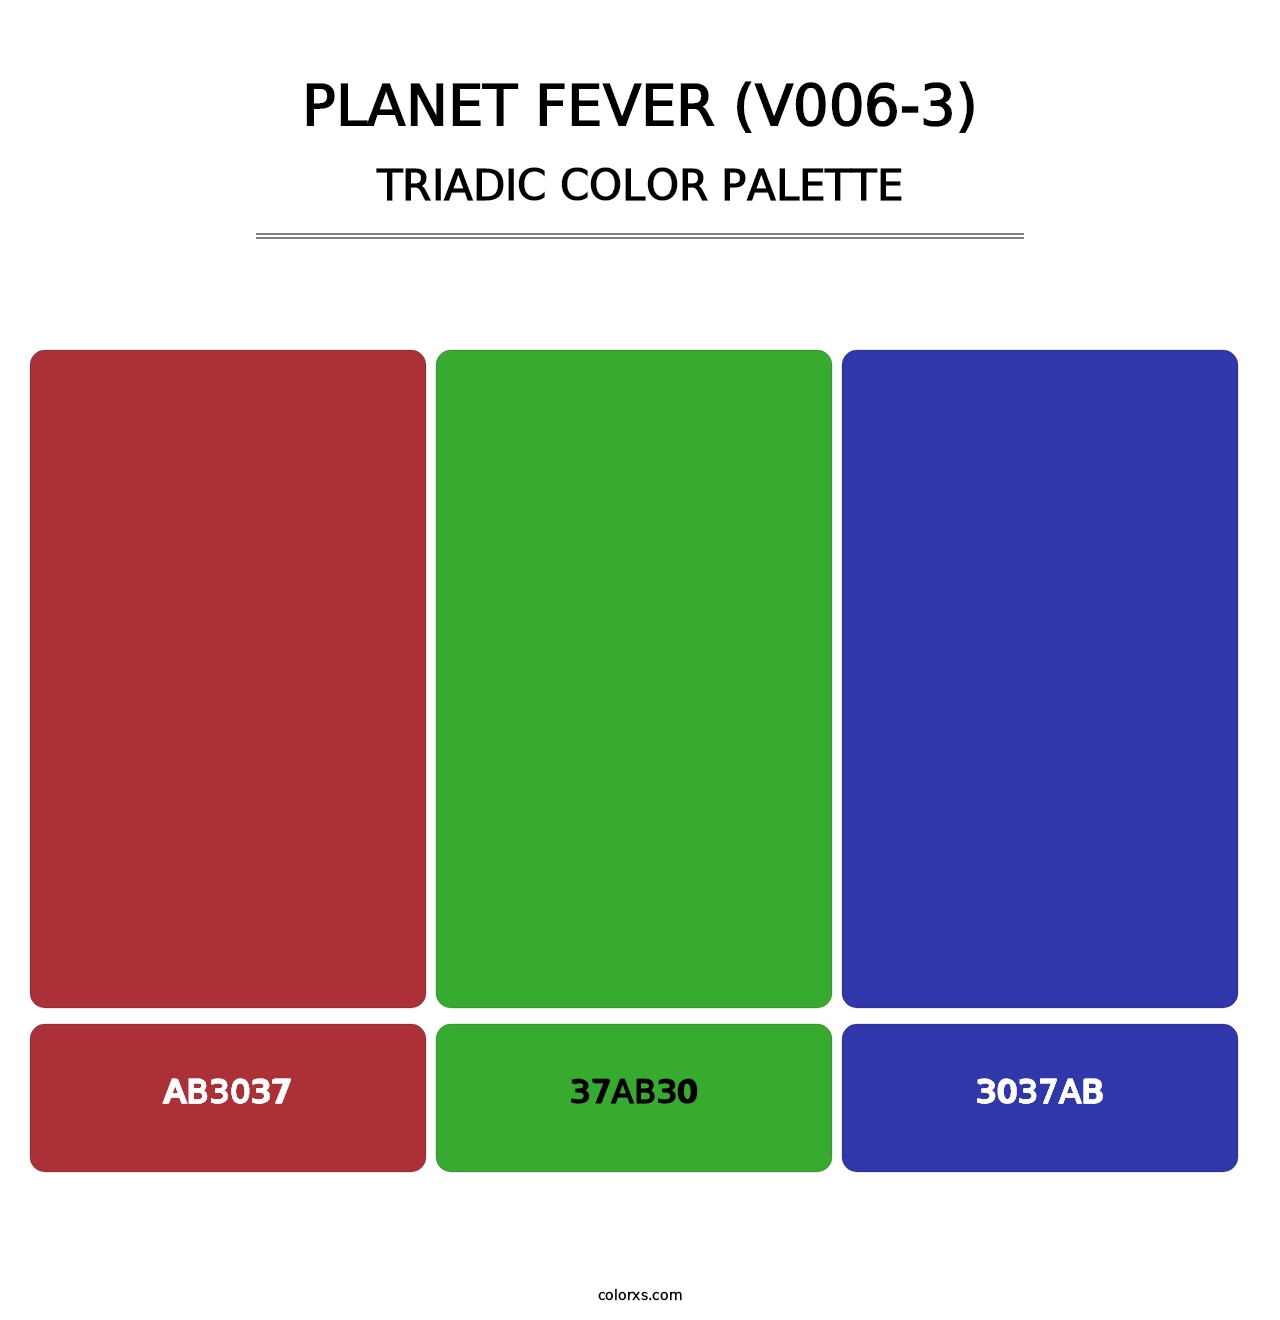 Planet Fever (V006-3) - Triadic Color Palette